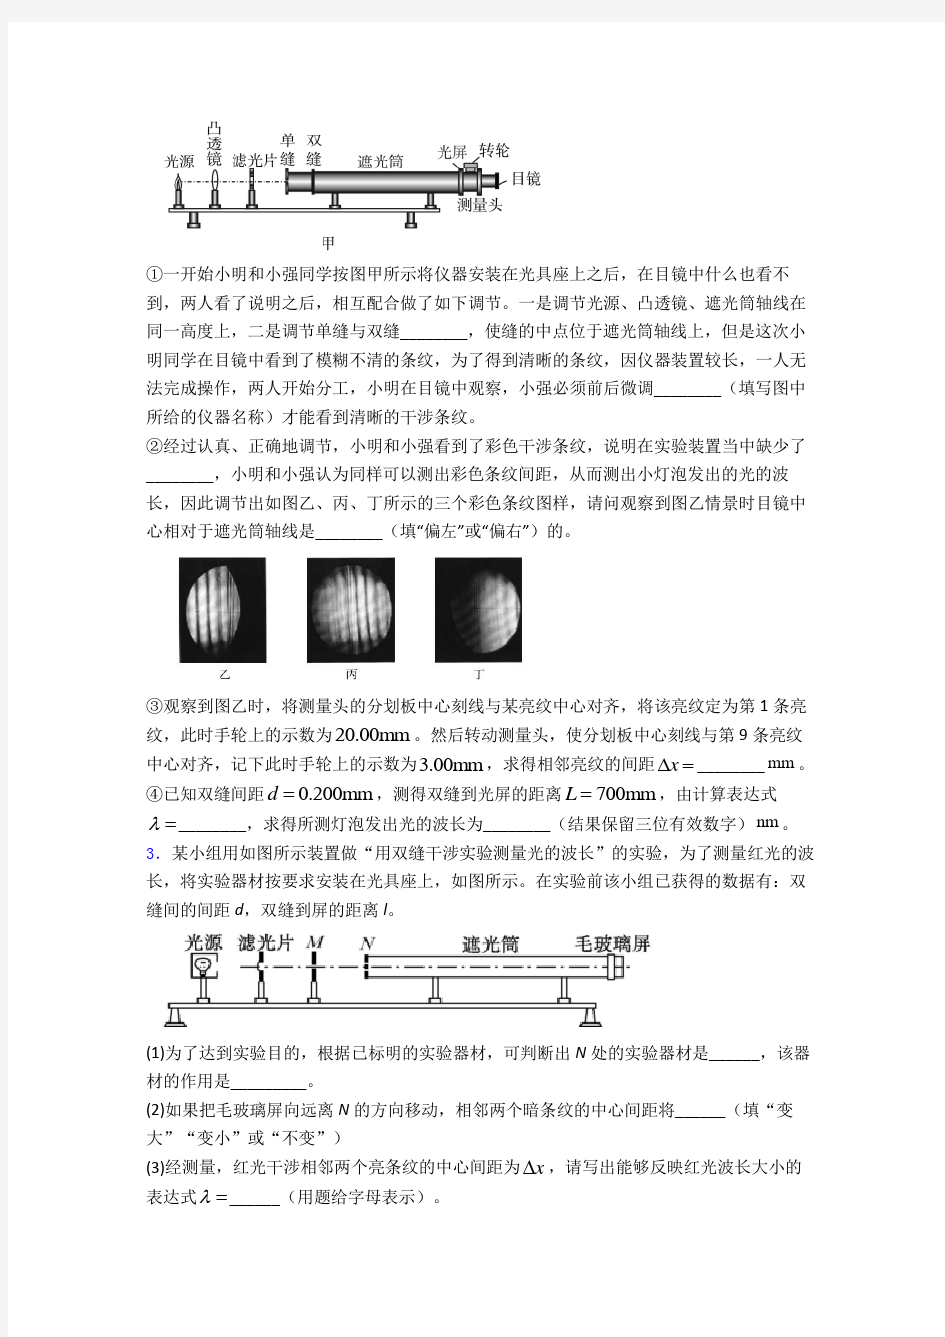 湖南师大附中《实验：用双缝干涉测量光的波长》测试题(含答案)